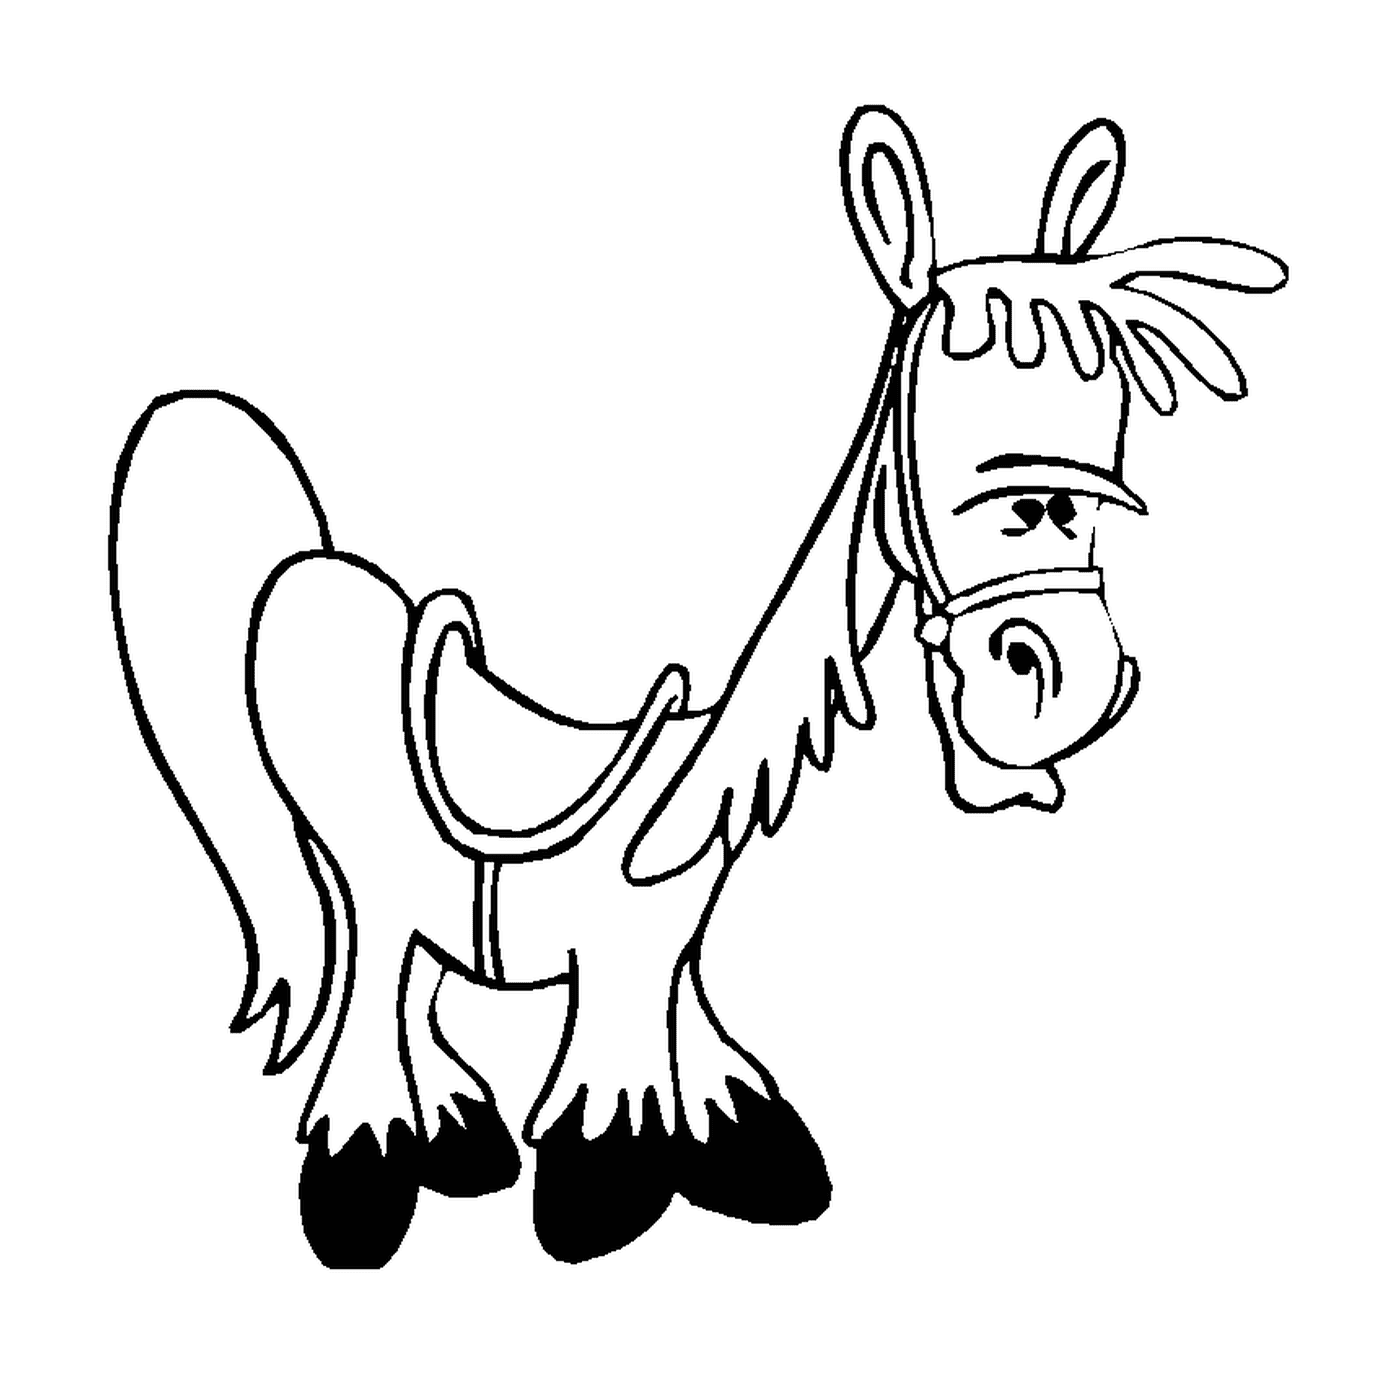  Забавная иллюстрация лошади с жгутом 